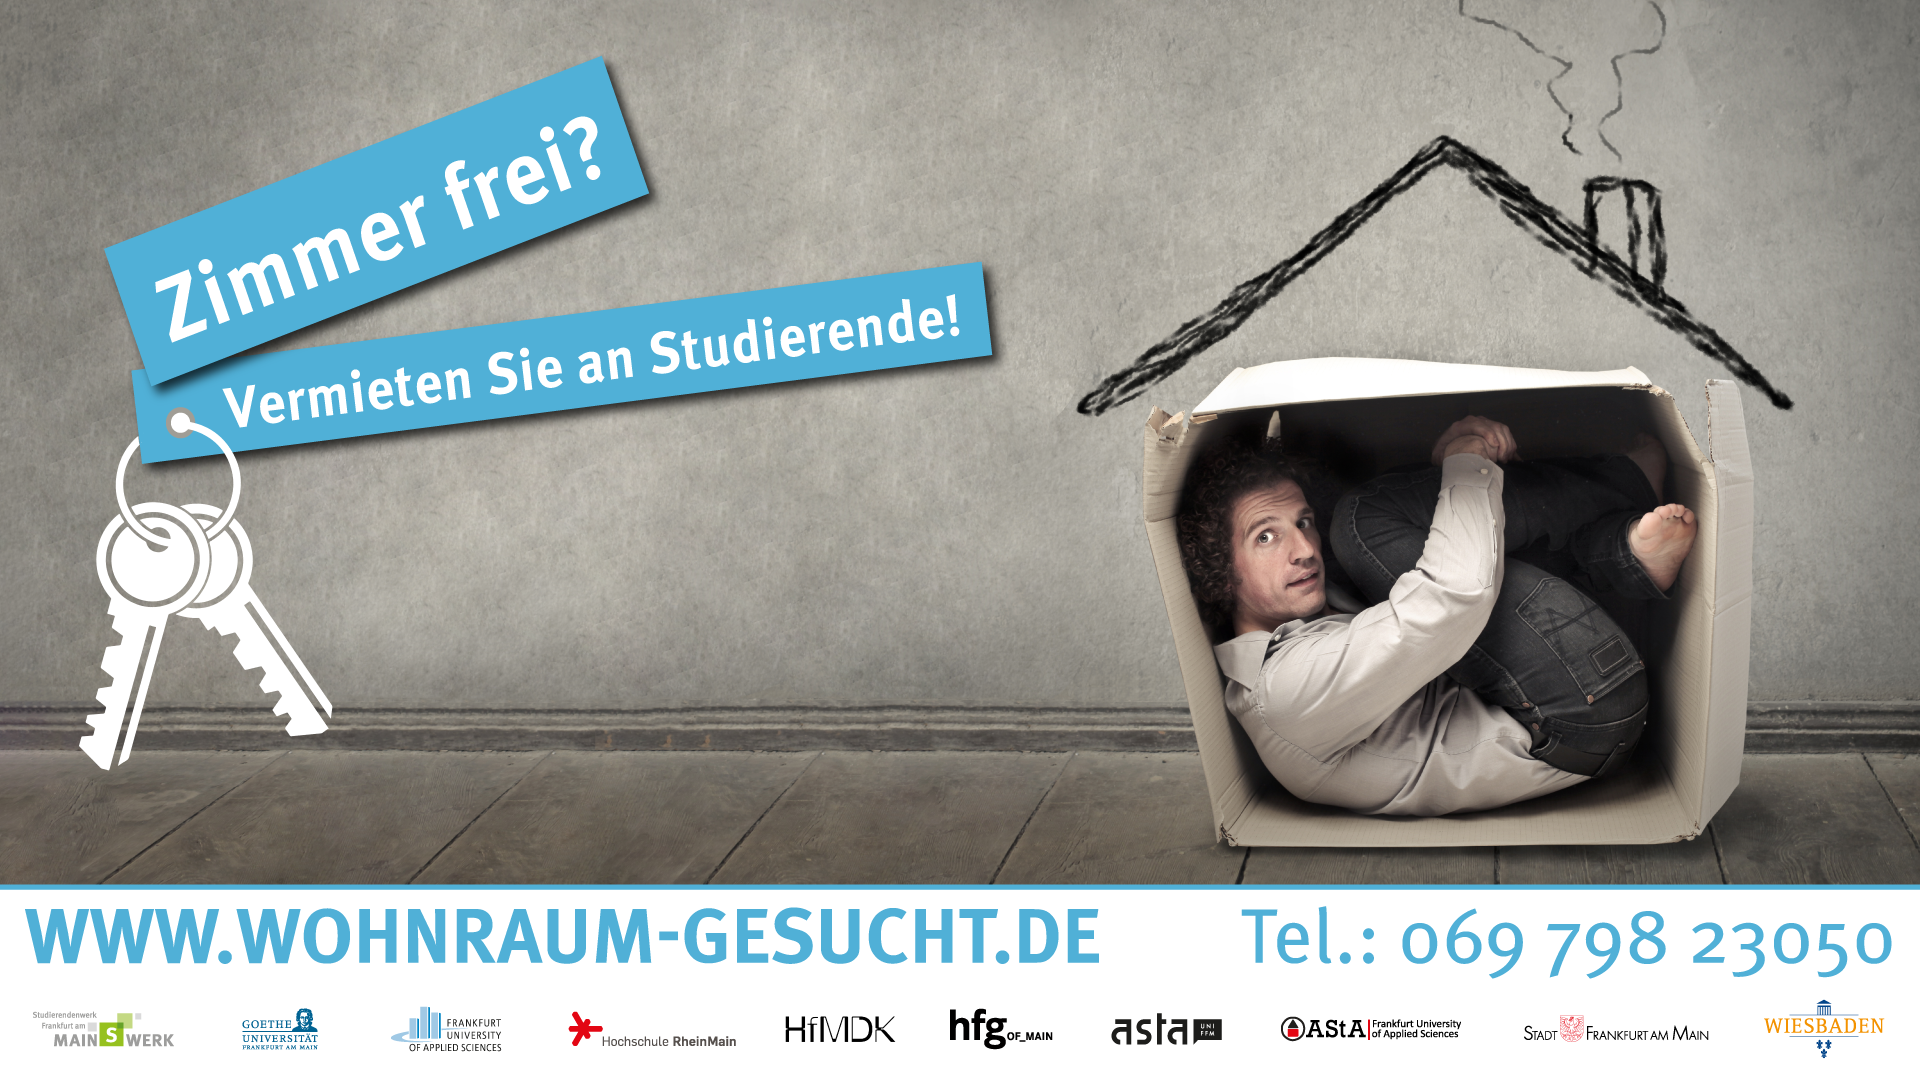 Ein junger Mann in einer Pappkiste, darüber der Titel "Zimmer frei? Vermieten Sie an Studierende" und darunter die URL www.wohnraum-gesucht.de und die Telefonnummer 06979823050